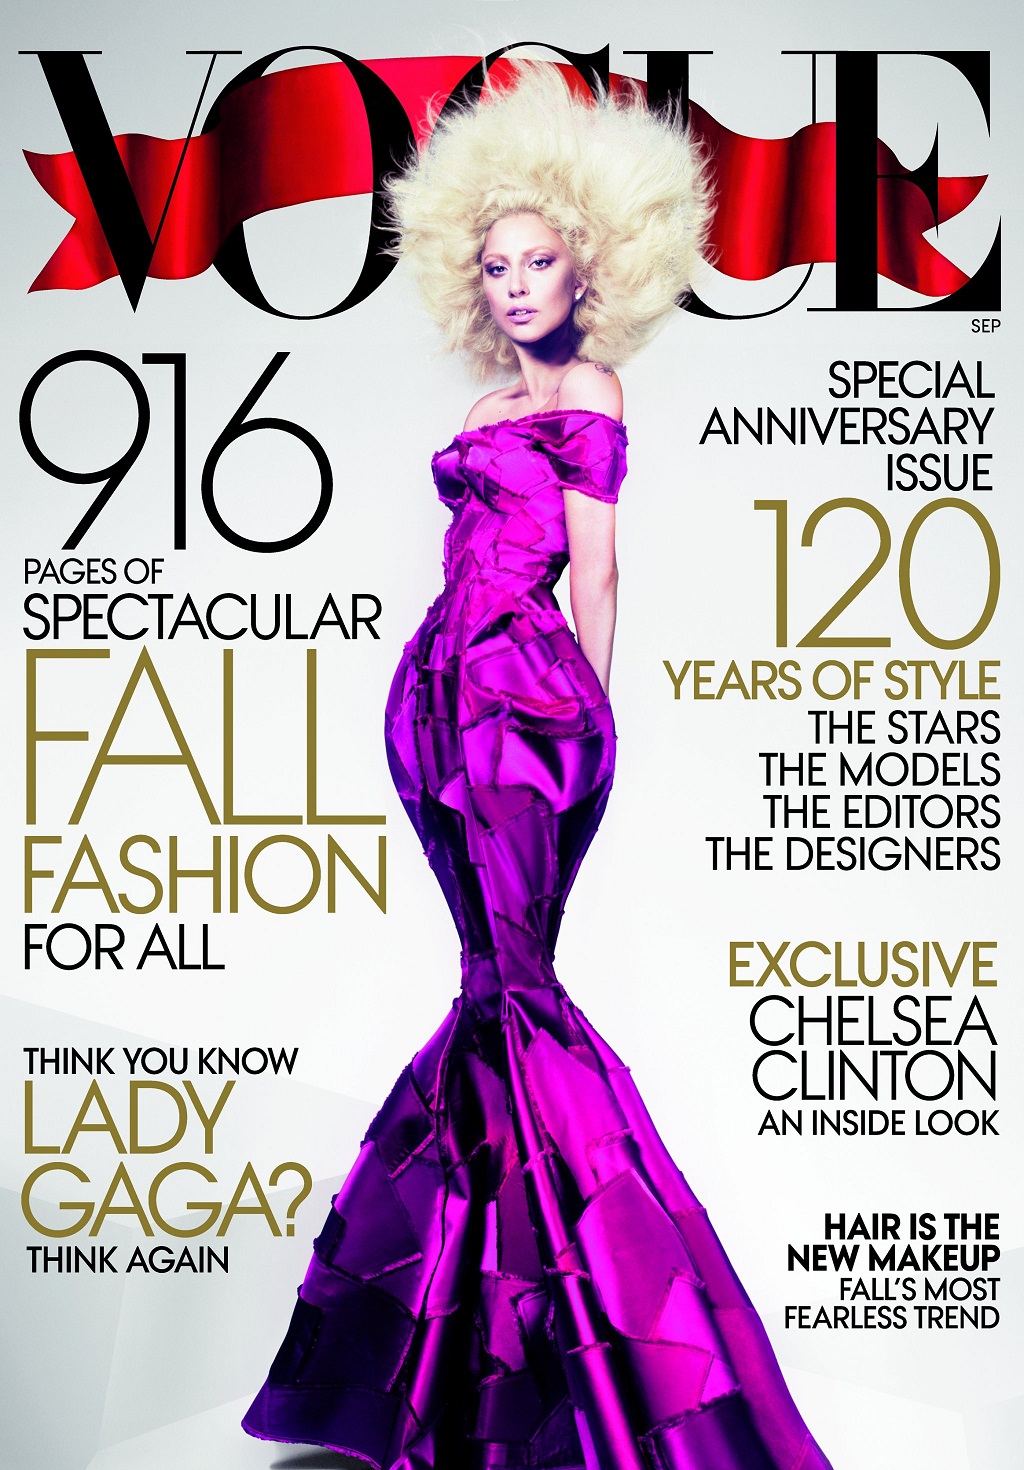 http://2.bp.blogspot.com/-9tRYKpiZ1AA/UNc8IWOAHAI/AAAAAAAAAjM/3NOiCKKvhL4/s1600/Lady-Gaga-Vogue-September-2012.jpg